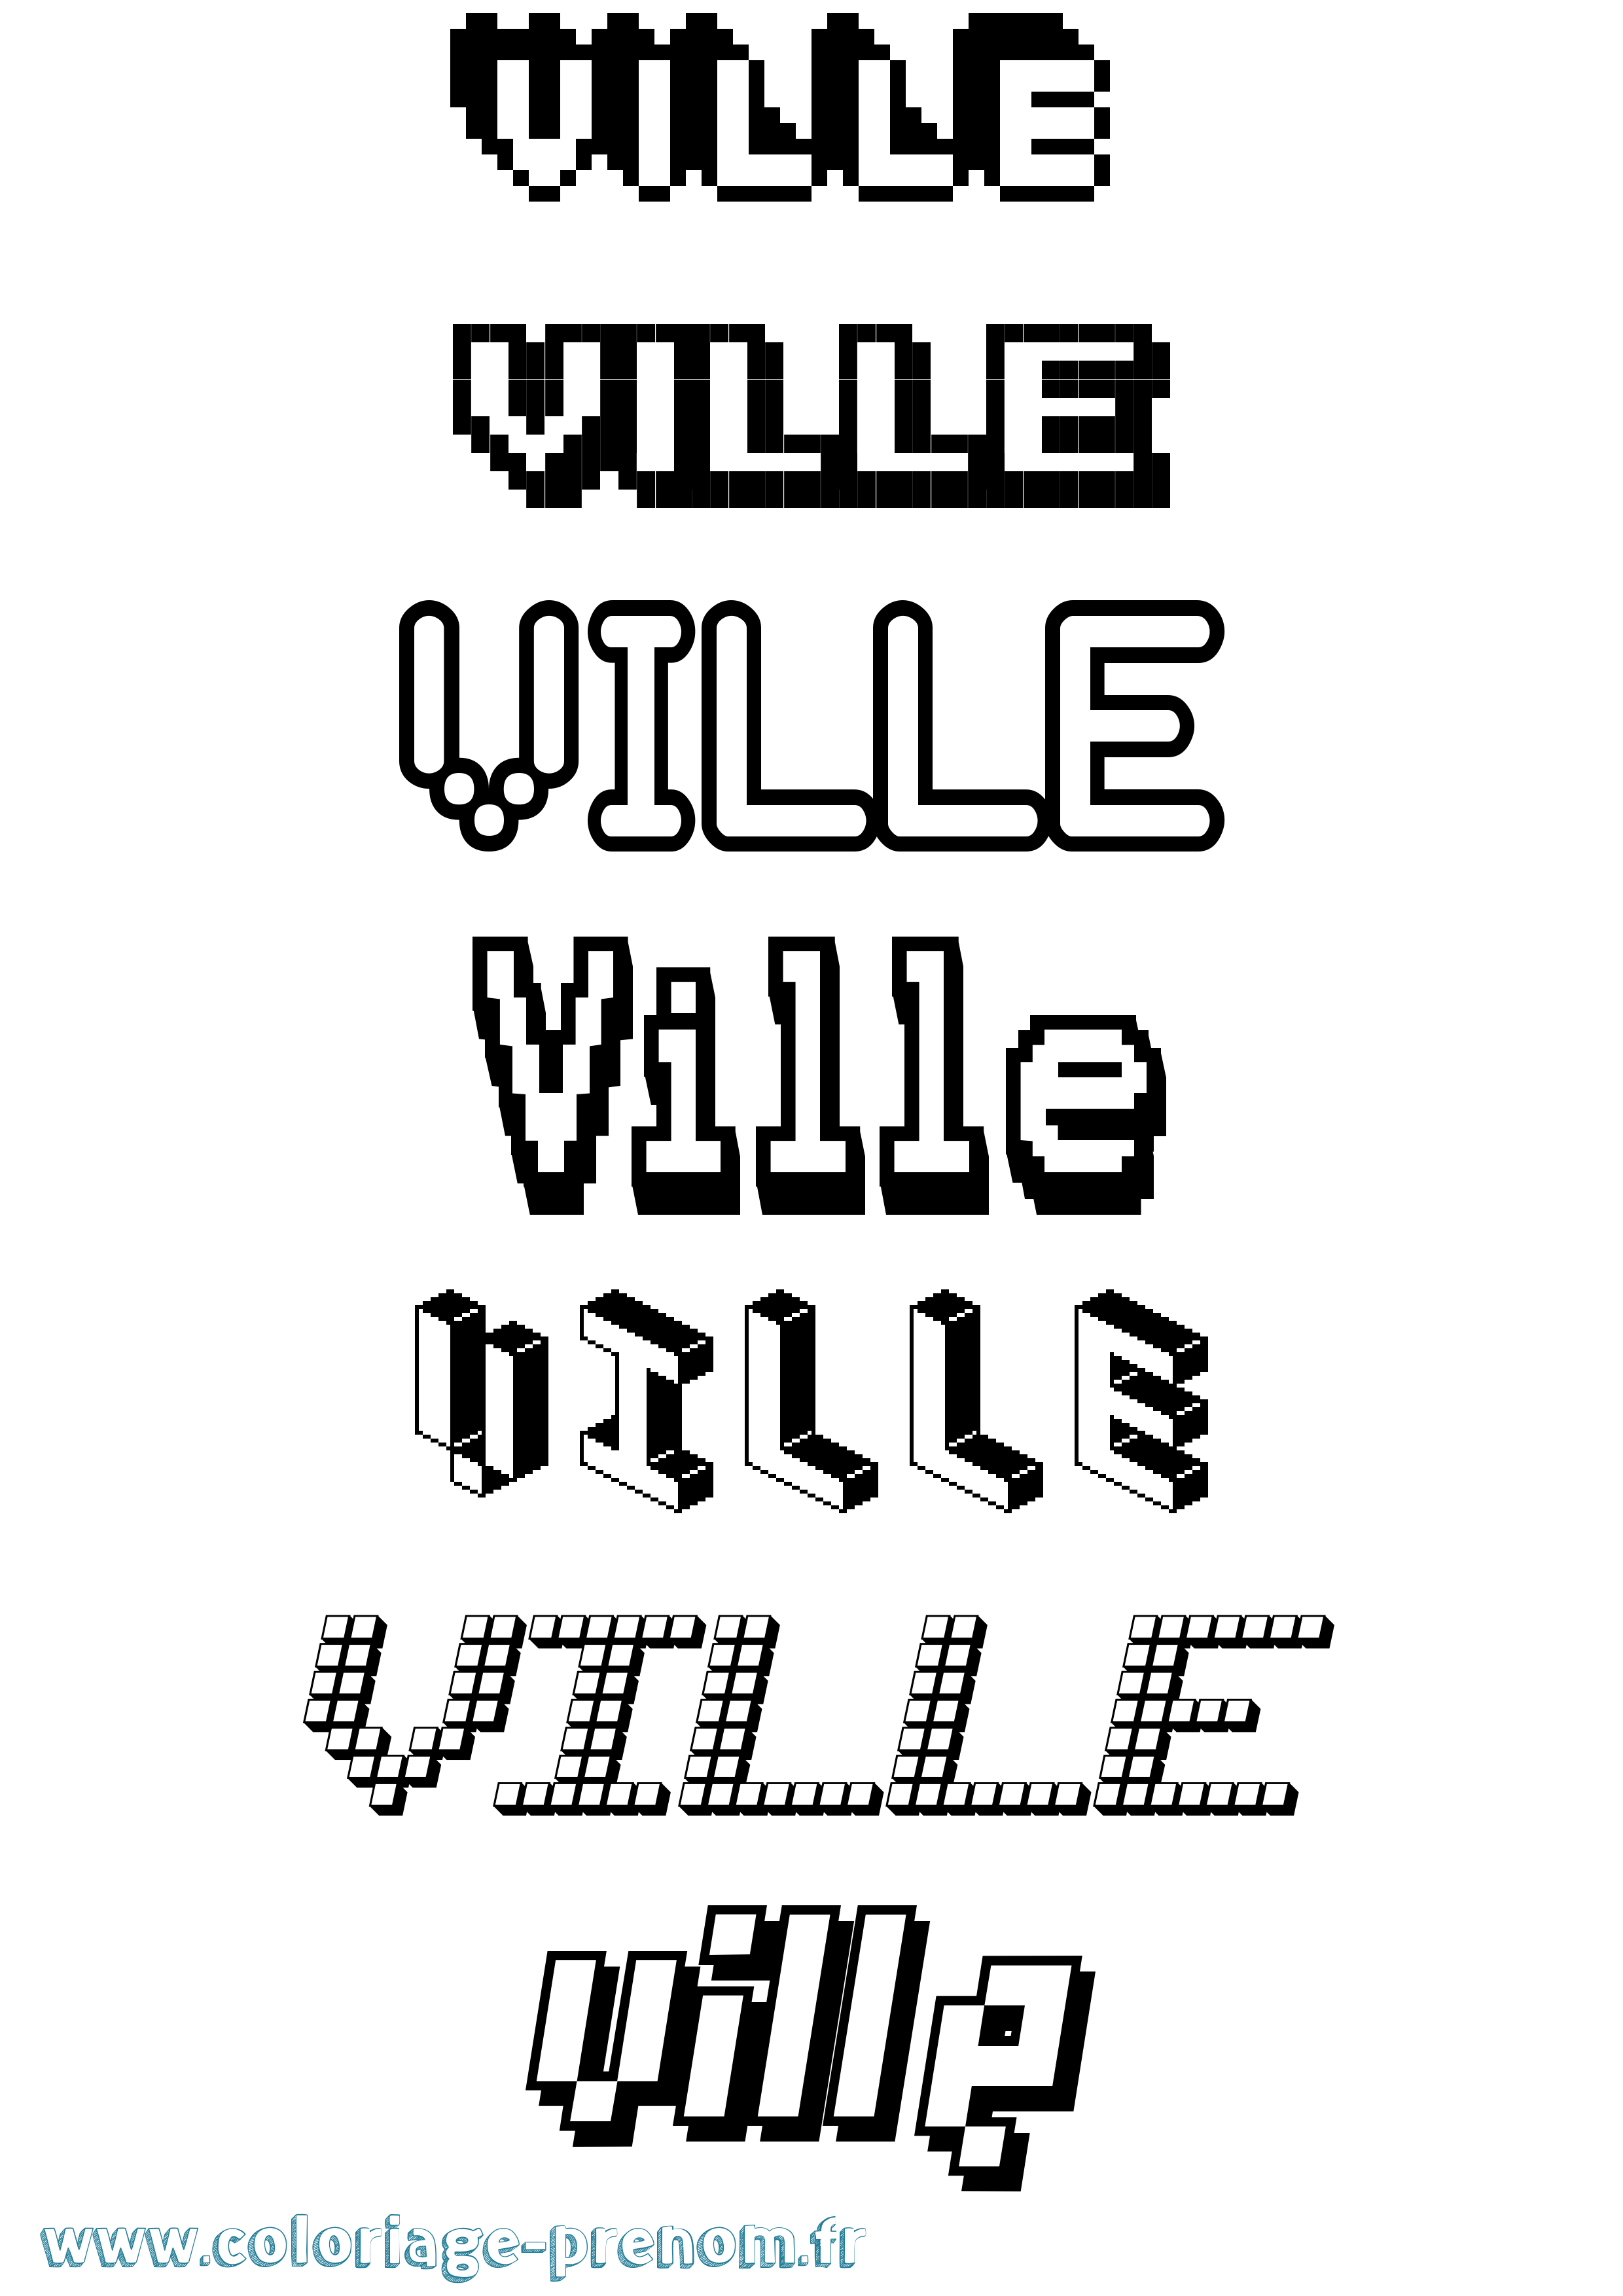 Coloriage prénom Ville Pixel